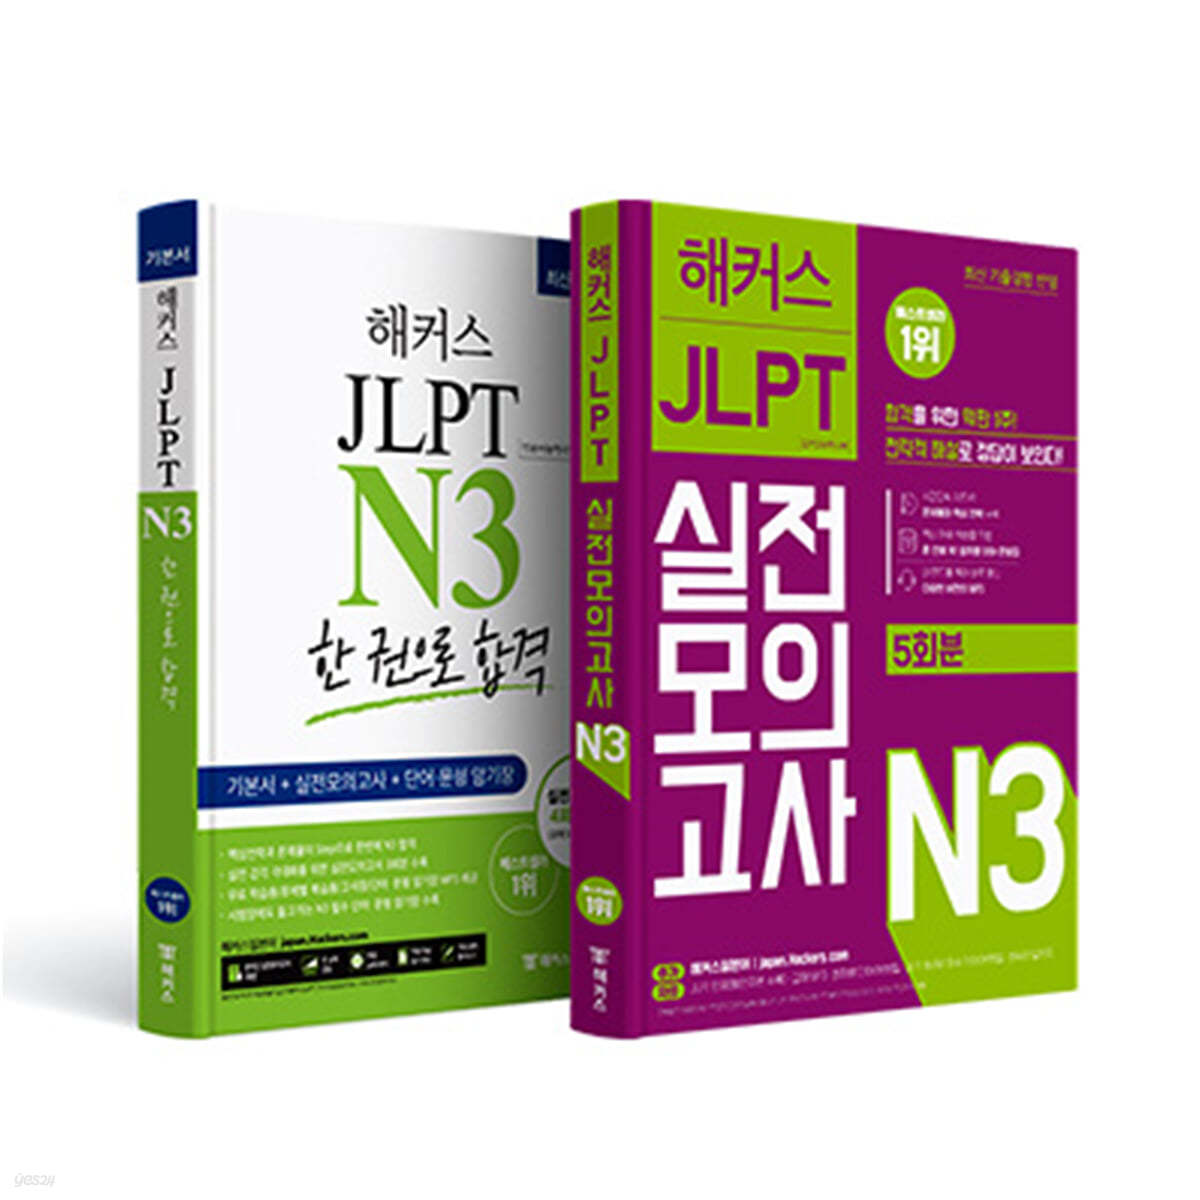 해커스일본어 JLPT 일본어능력시험 N3 기본서 + 실전모의고사 5회분 실전 완성세트